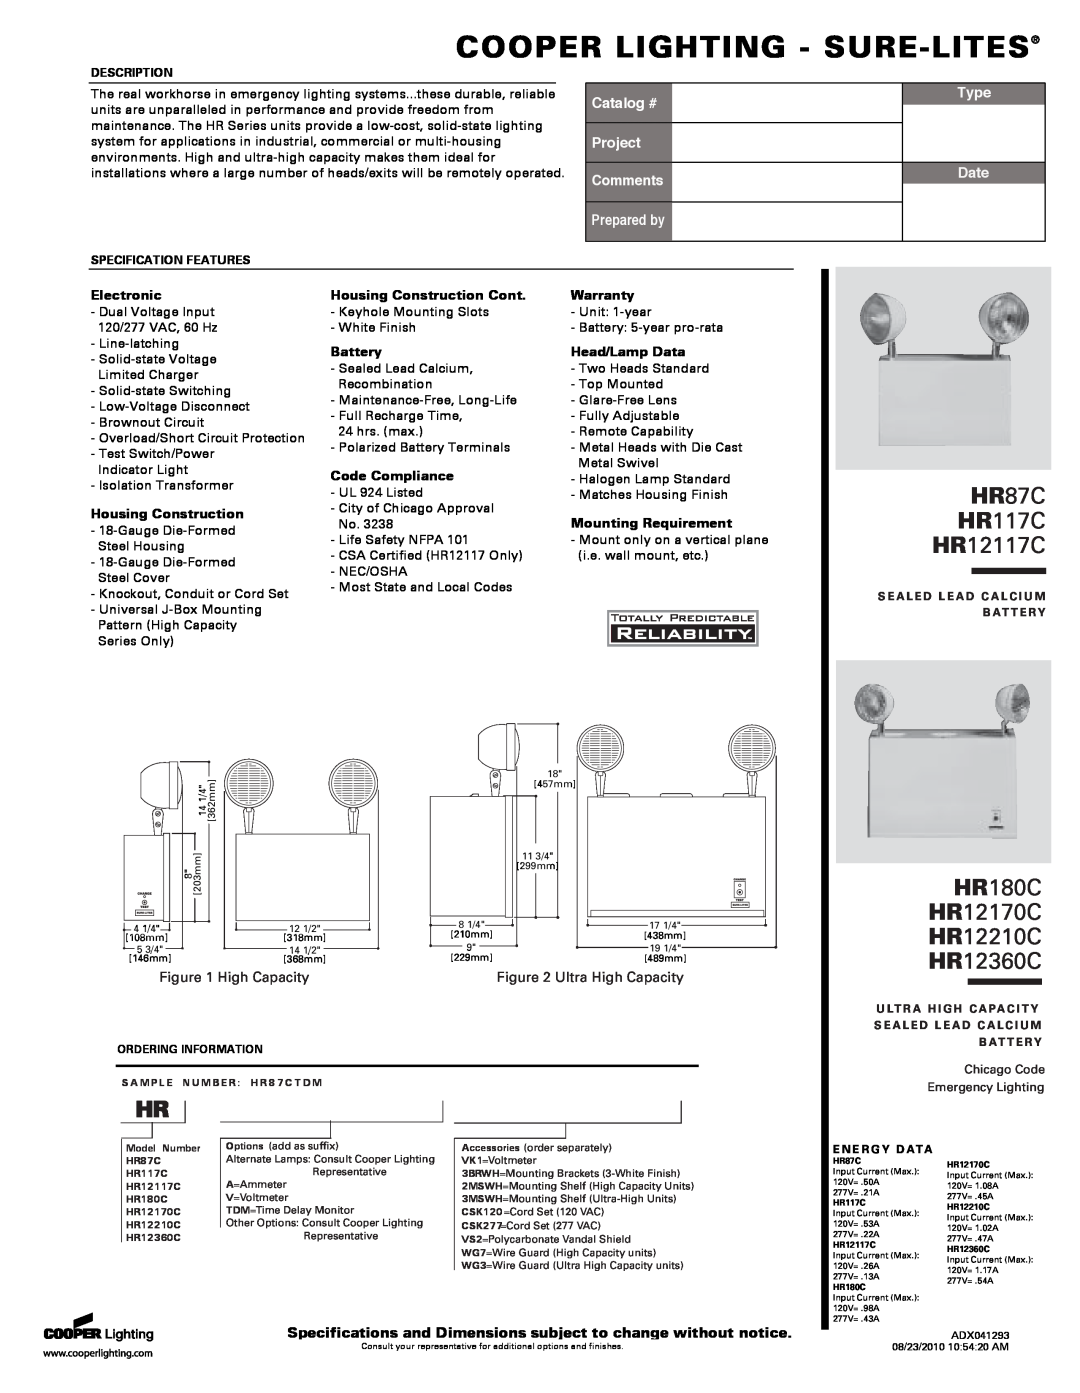 Cooper Lighting specifications Cooper Lighting - Sure-Lites, HR87C HR117C HR12117C, HR180C HR12170C, HR12210C HR12360C 